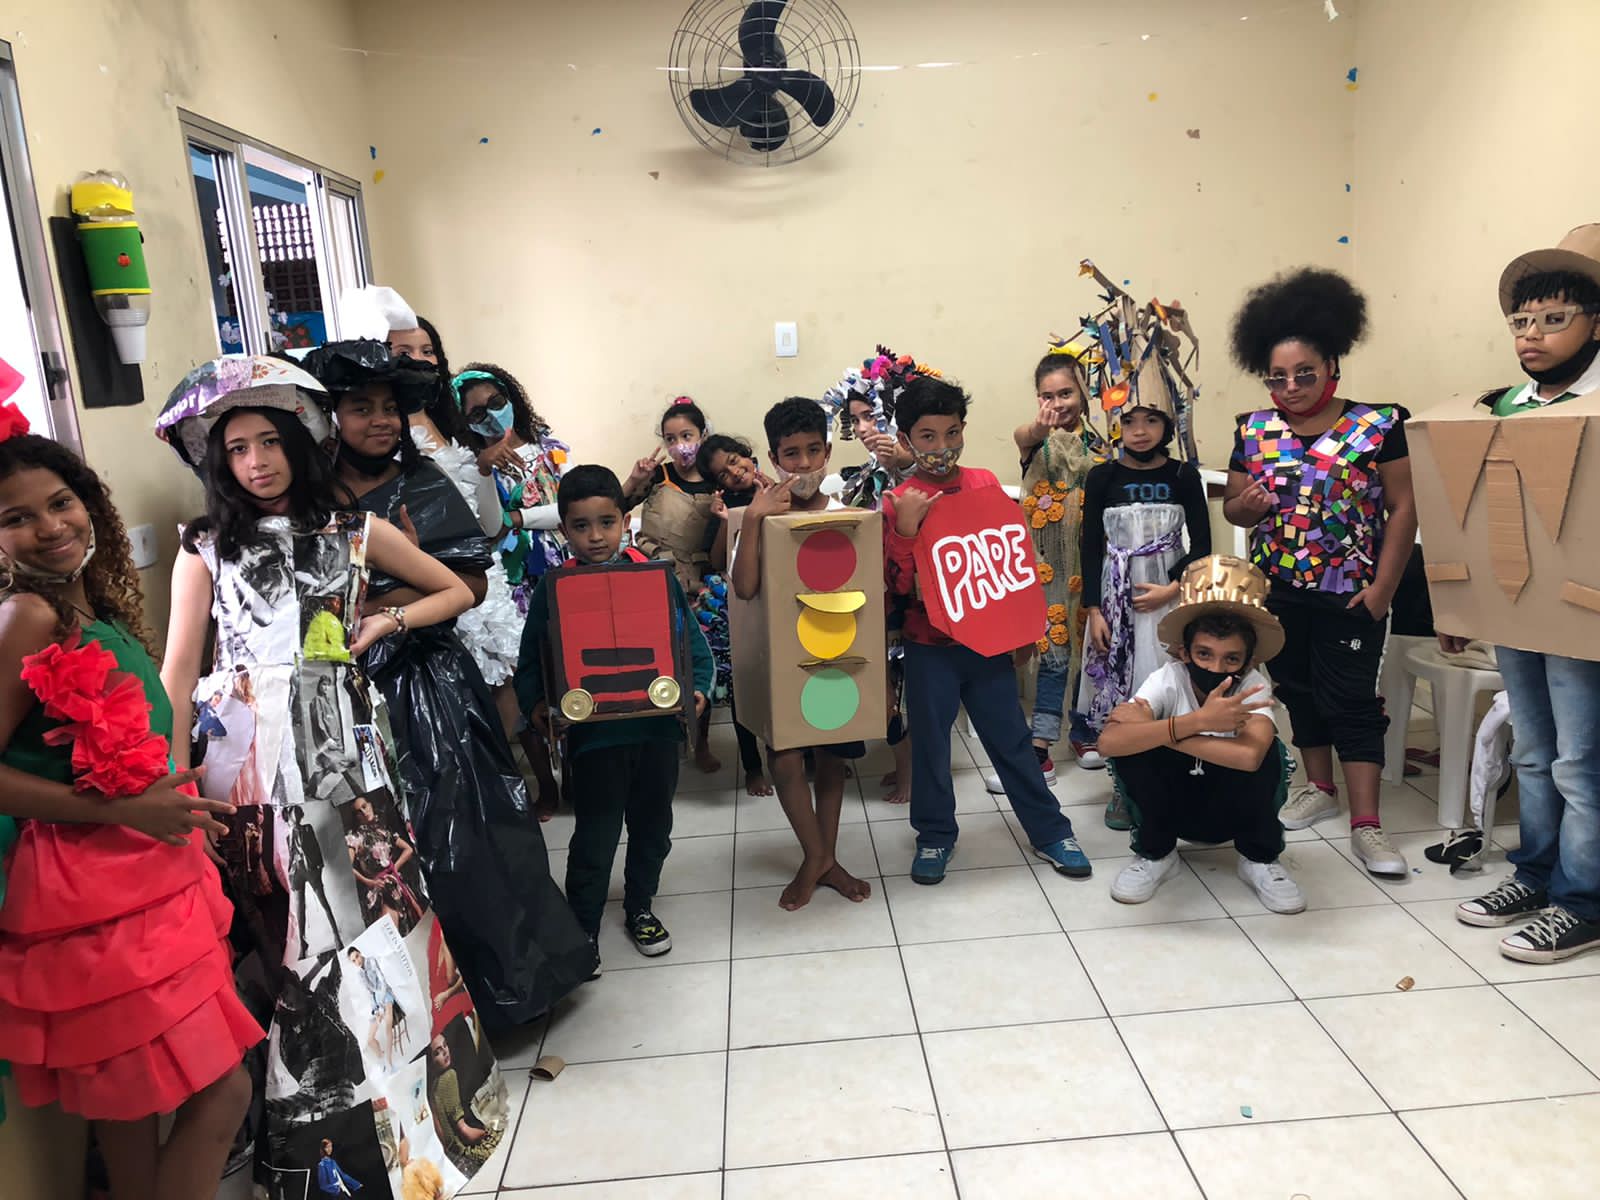 Cerca de 16 crianças participantes do desfile, todas vestidas com fantasias diferenciadas produzidas com caixa, papéis, jornais, entre outros materiais, posam para foto nos bastidores da festa. 